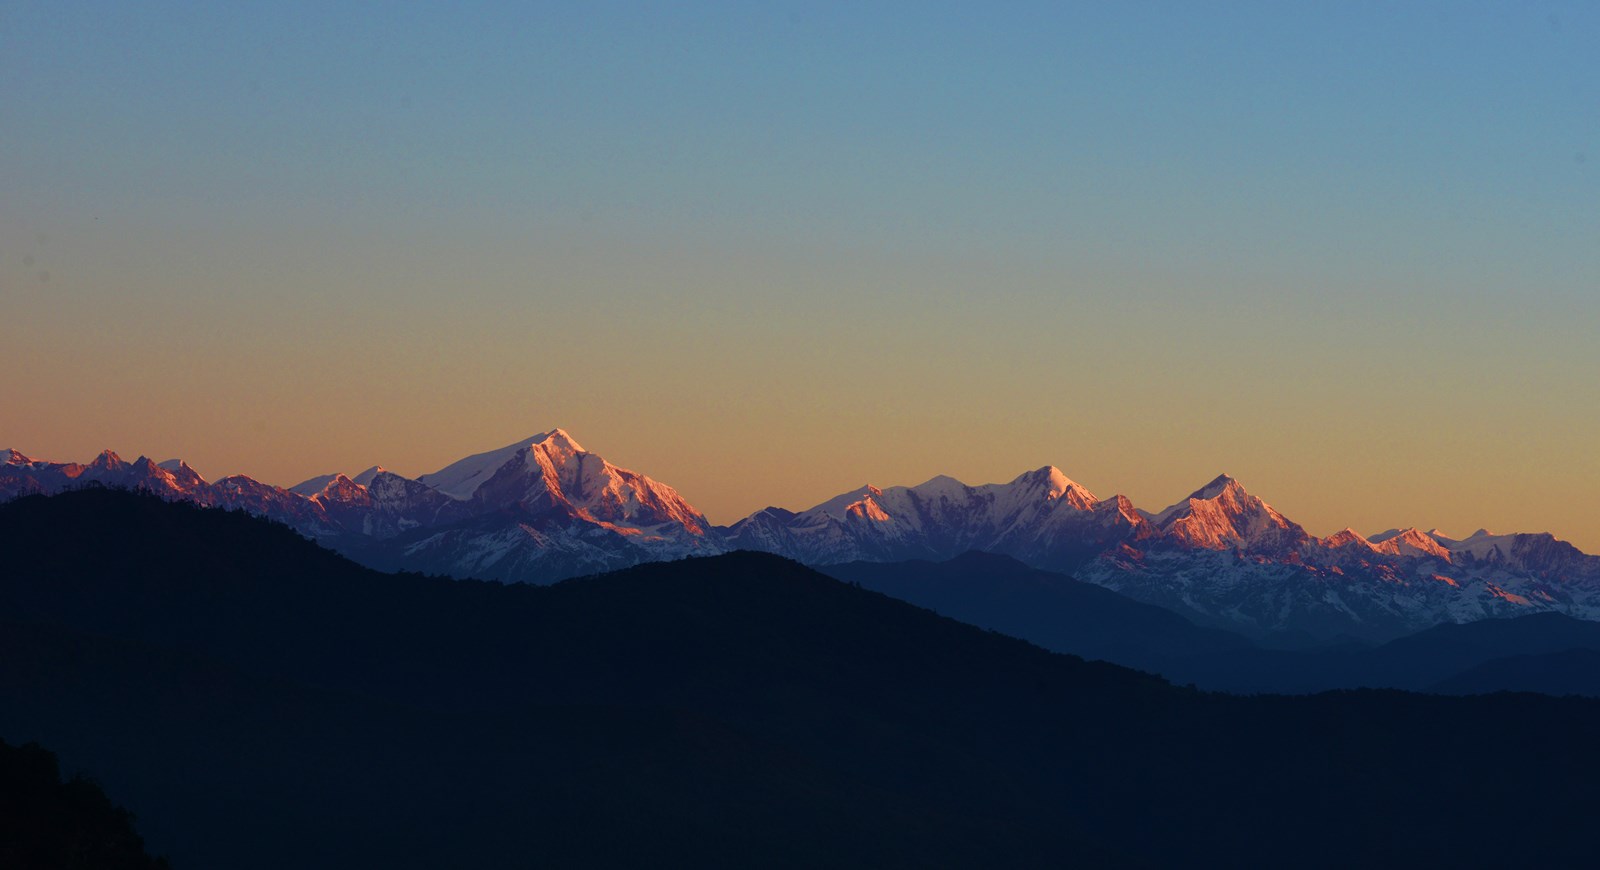 Gori Chen Mountain in Arunachal Pradesh